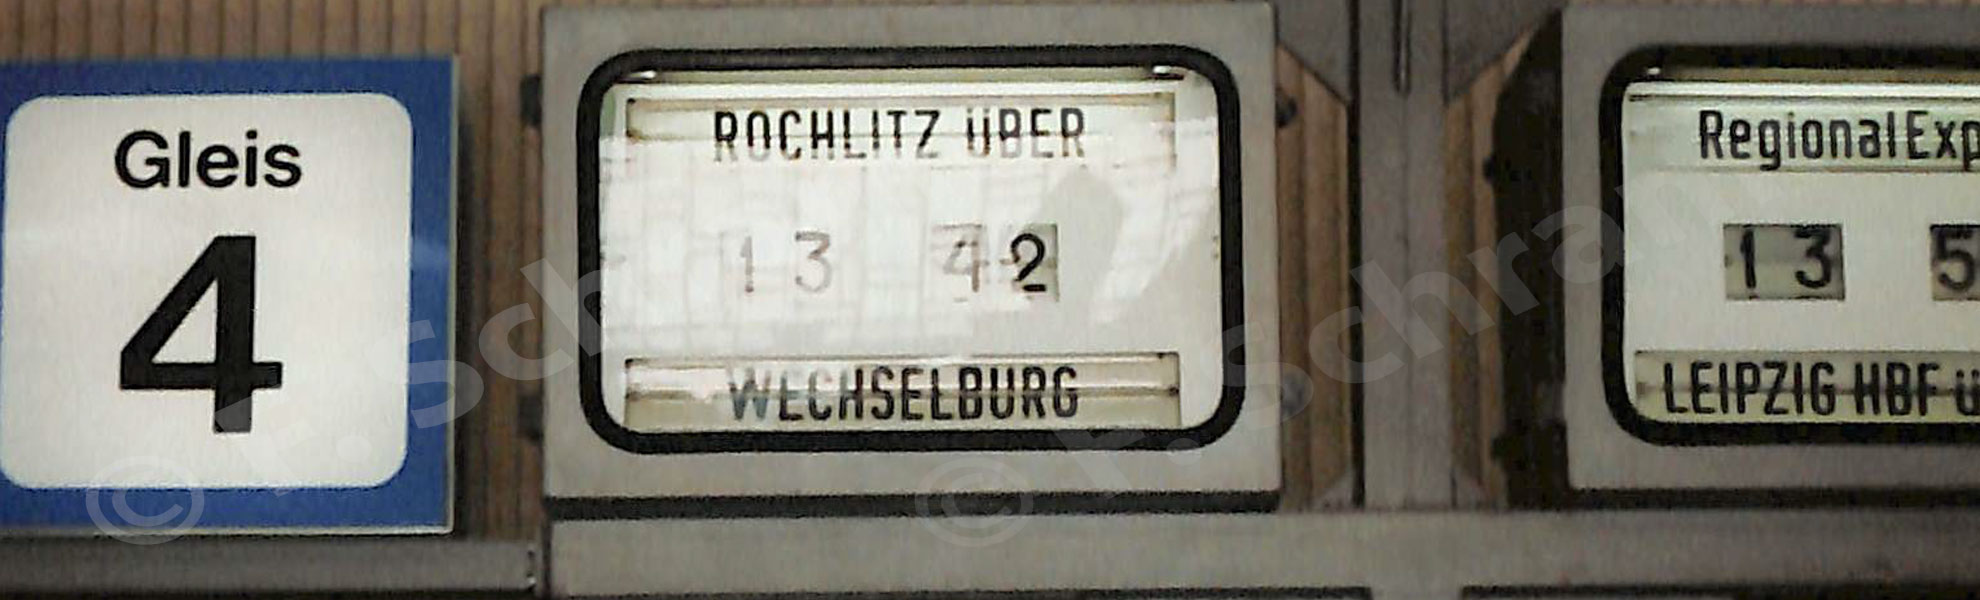 Auf Gleis 4 steht Bereit der "Chemnitztalexpress" nach Rochlitz über Wechselburg (1998)